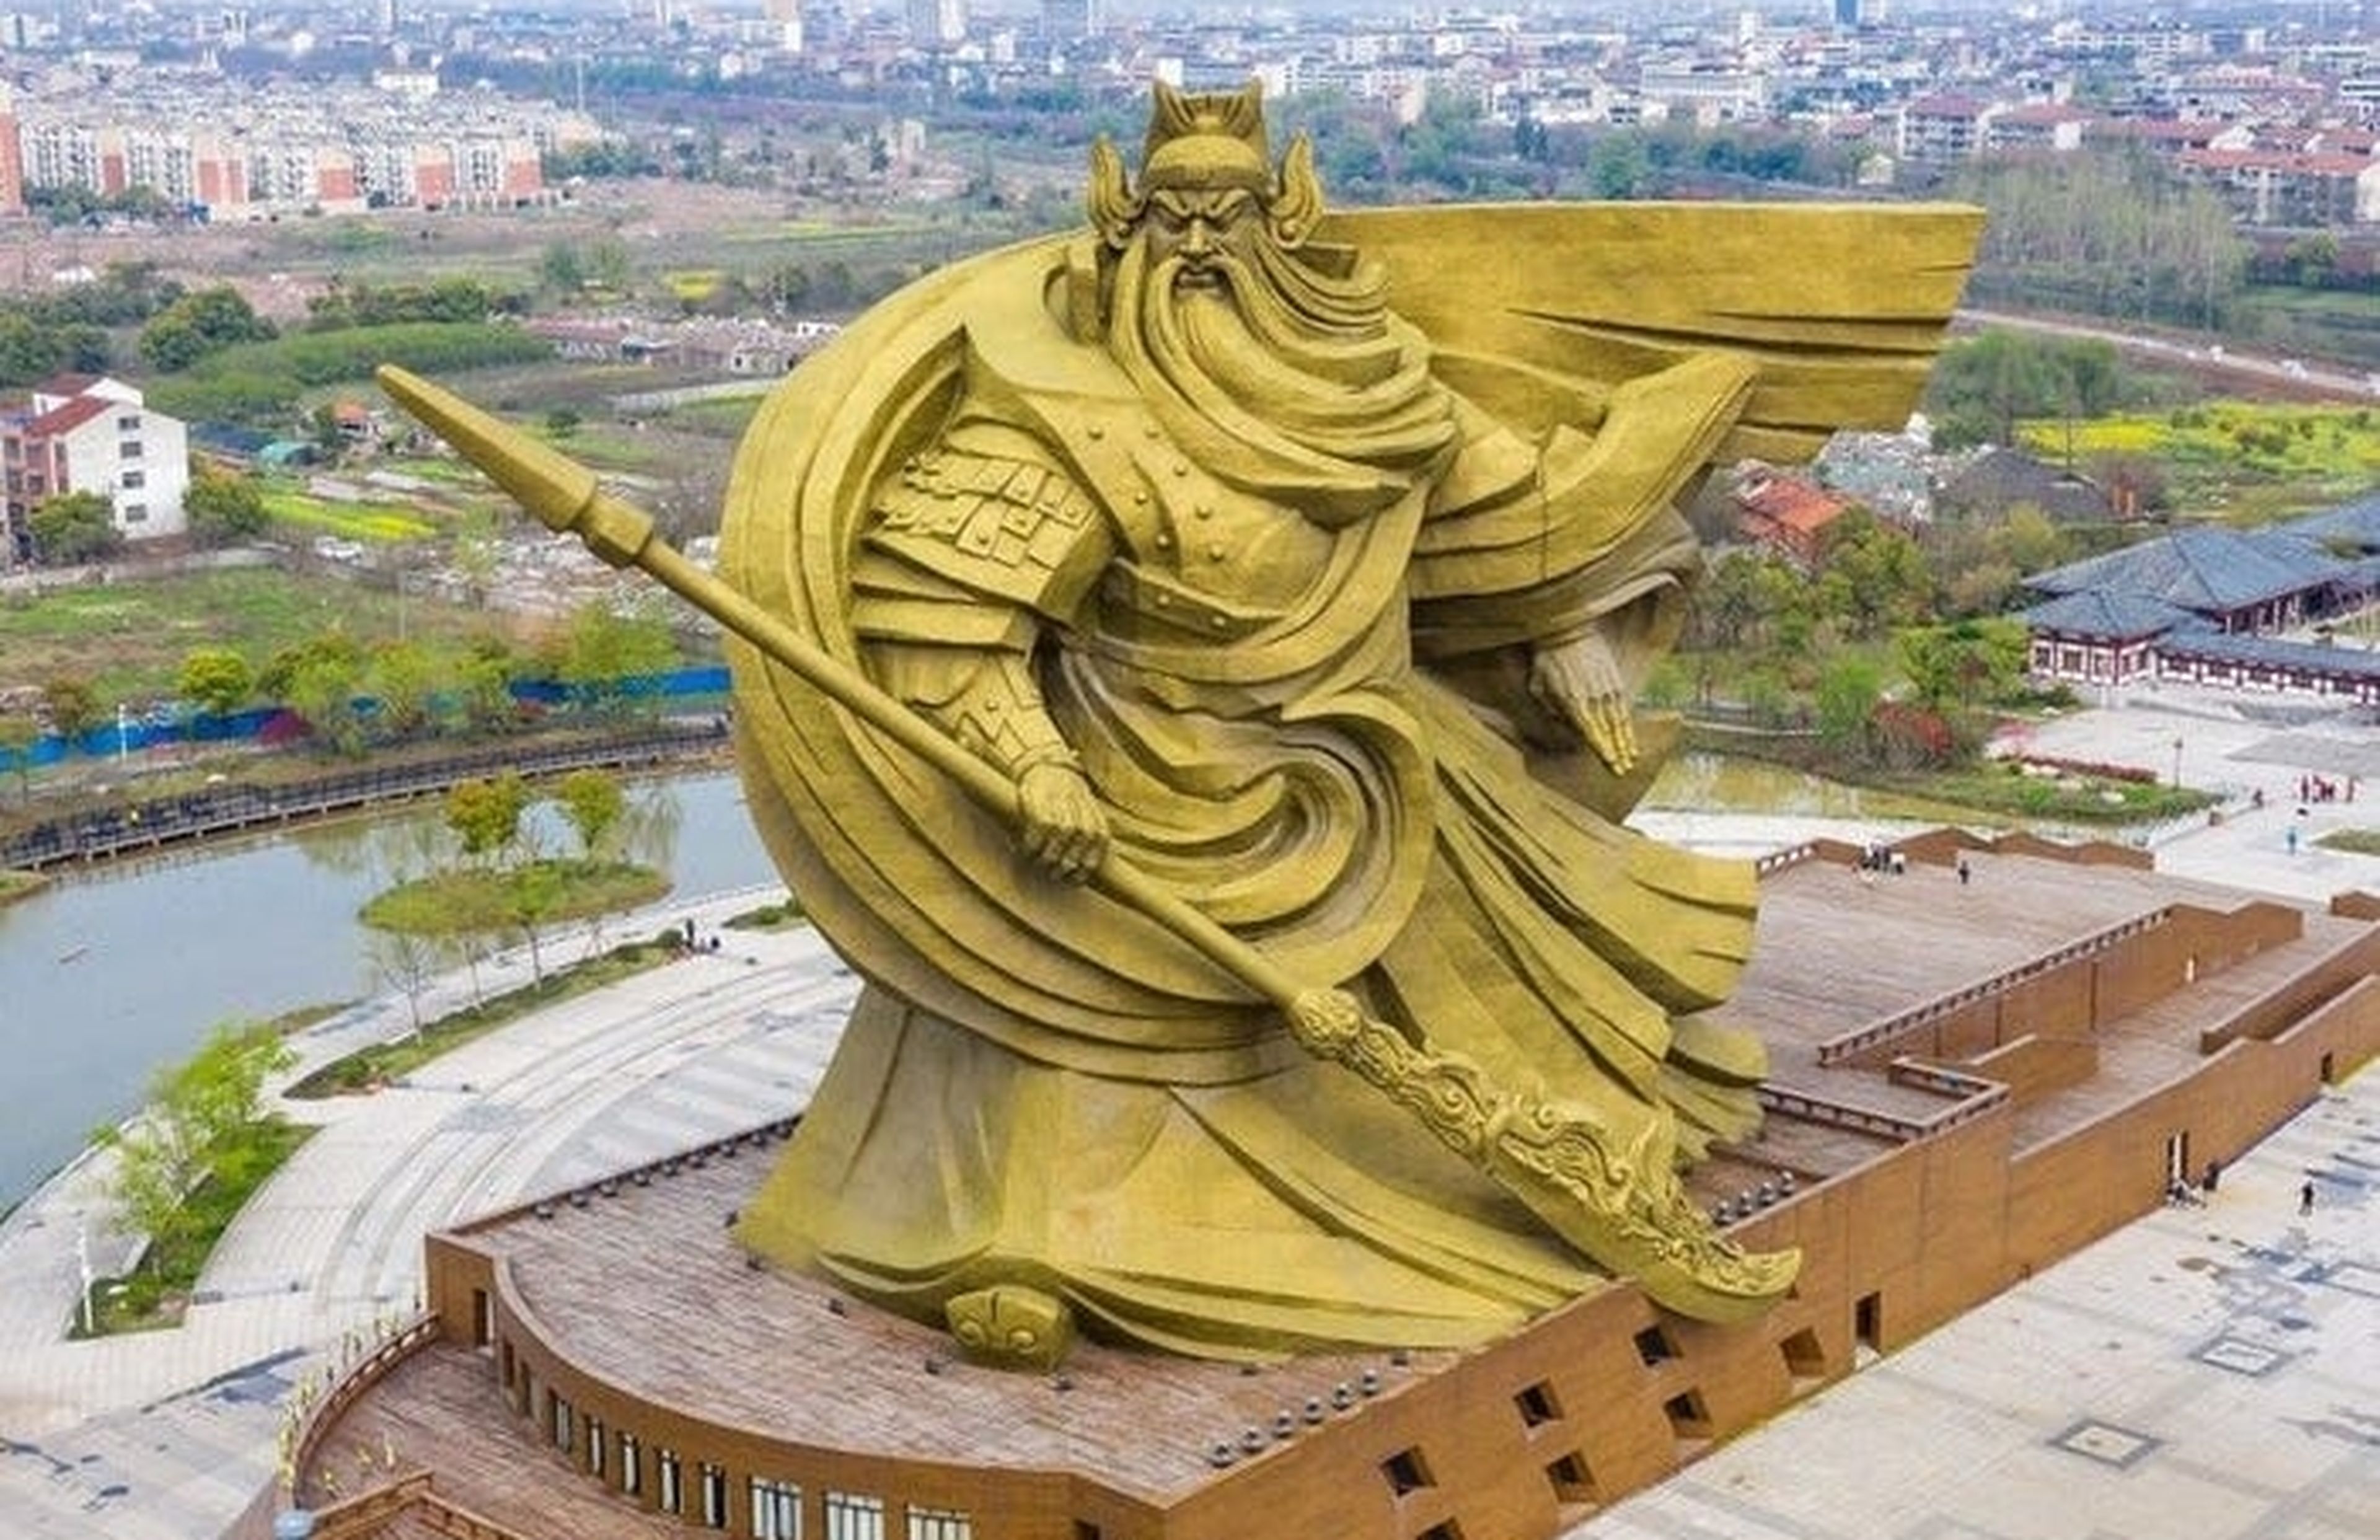 Construyen una estatua de 58 metros dedicada a un dios guerrero que no gusta a la gente, y gastan 20 millones en trasladarla